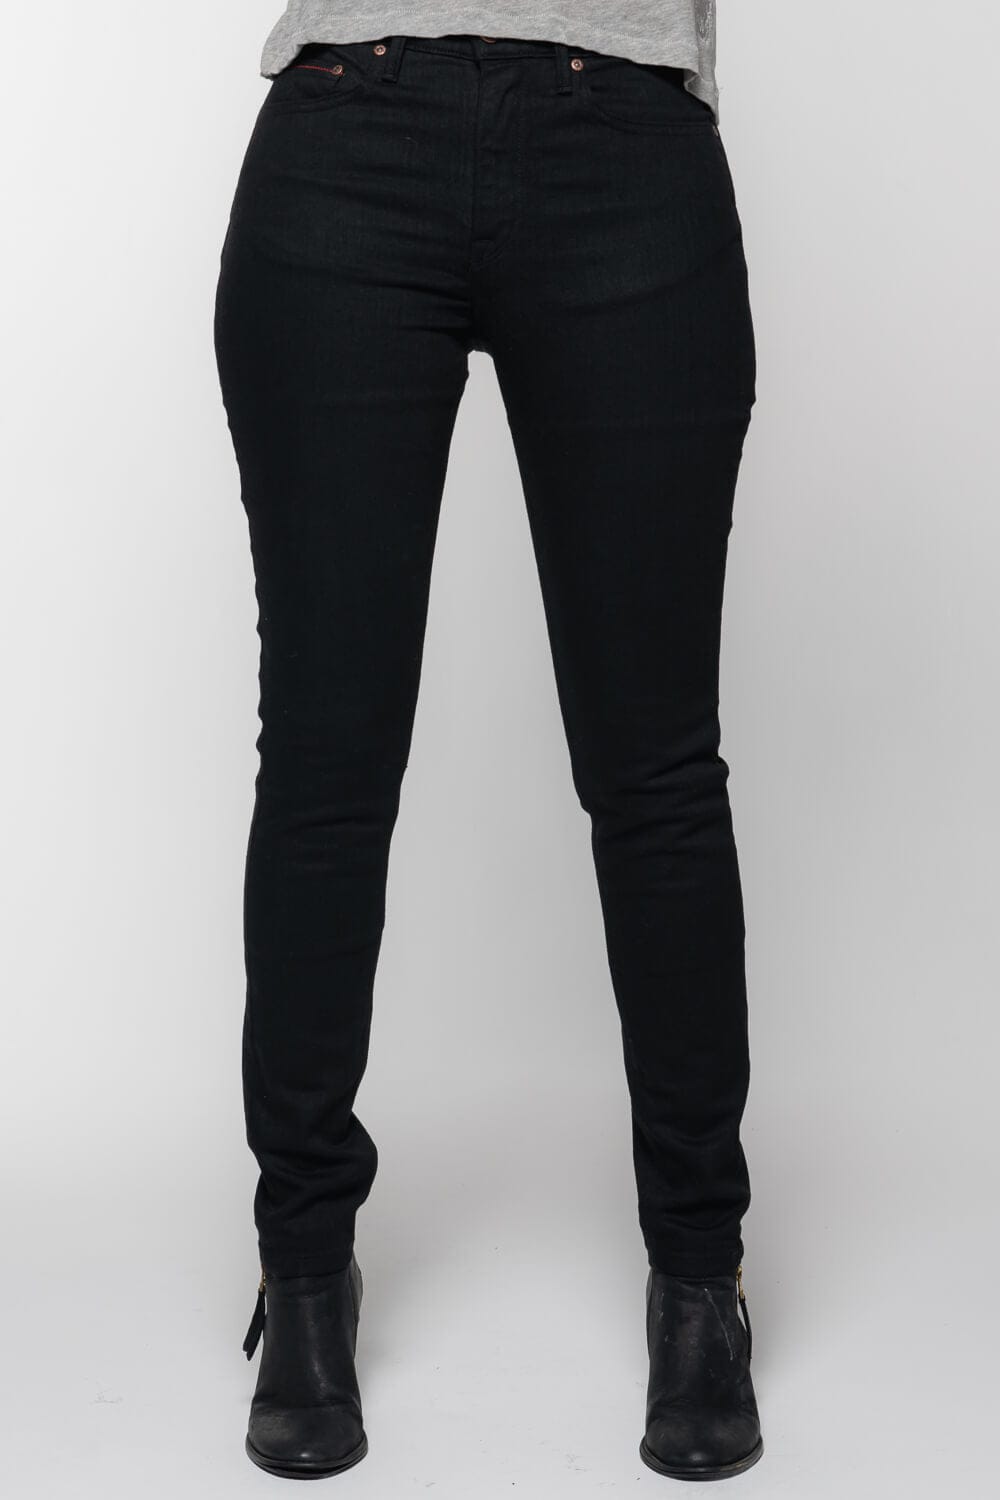 IQ Authentic Brand Capri Pants Suit Black Denim Jeans Jacket 2X Capris 16 